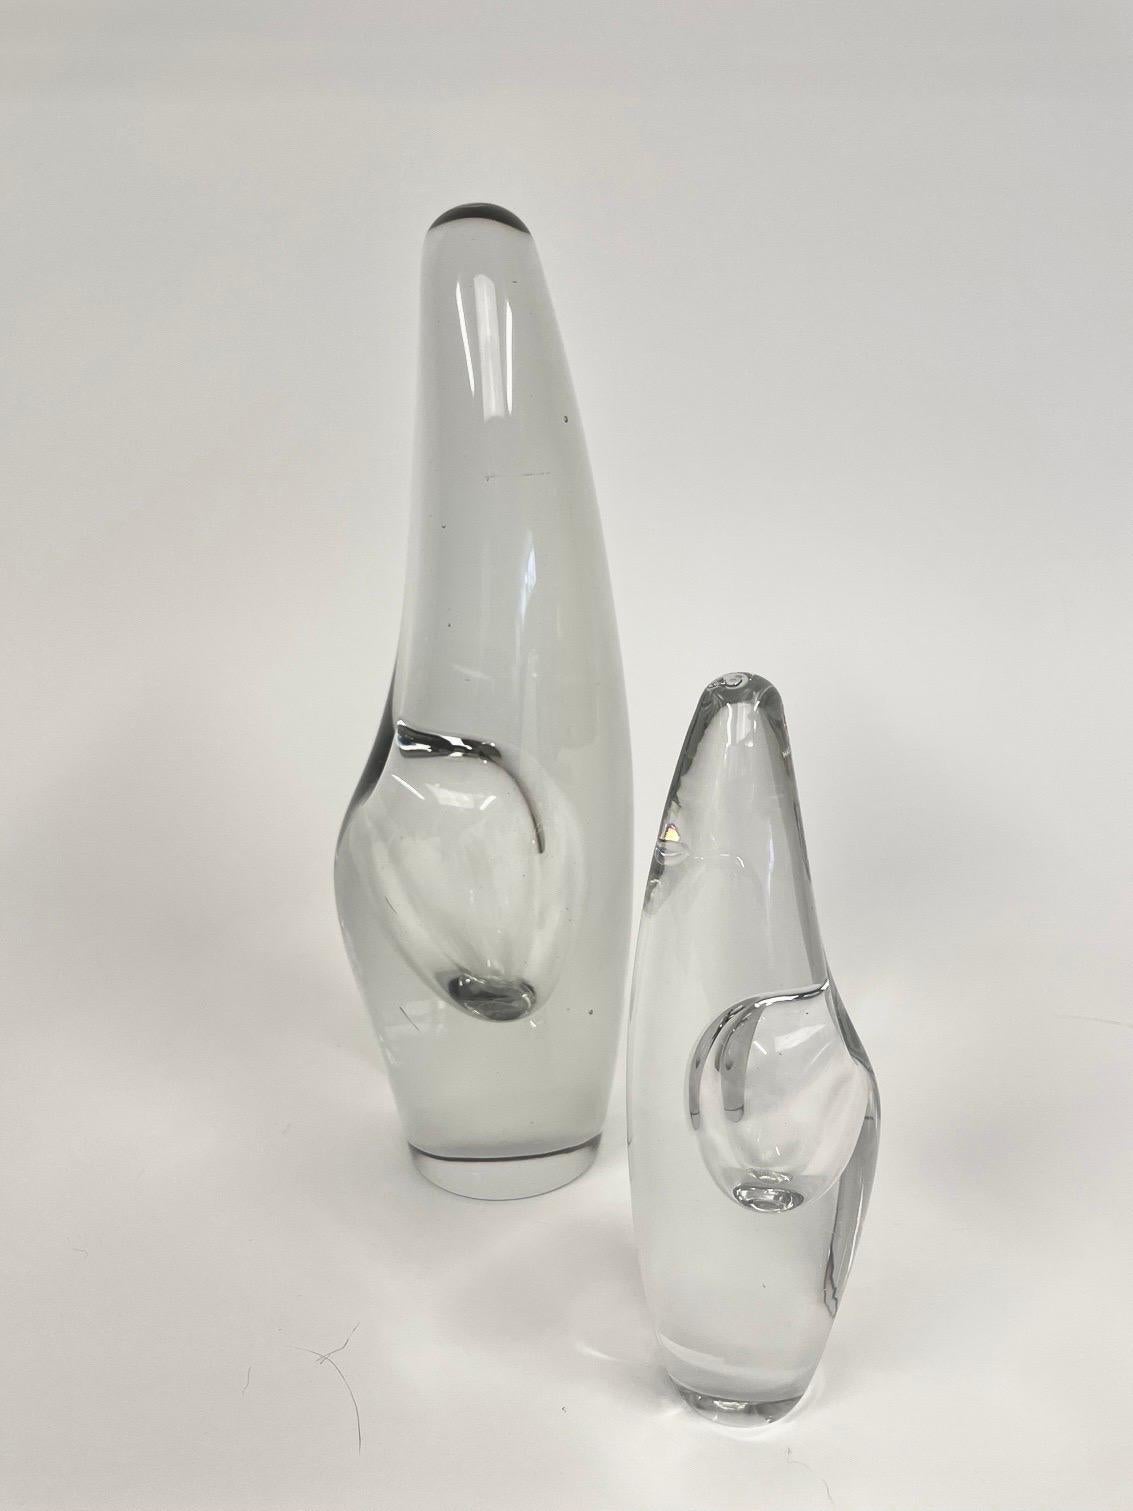 Dies ist das finnische skulpturale Vasenpaar, Modell Orckidéa 3568, entworfen 1953 in geschliffenem Kristallglas von Ittala.
Sie haben eine turmartige, spitz zulaufende Form mit einer leicht abgerundeten Spitze. Eine dampfgeblasene Aussparung in der